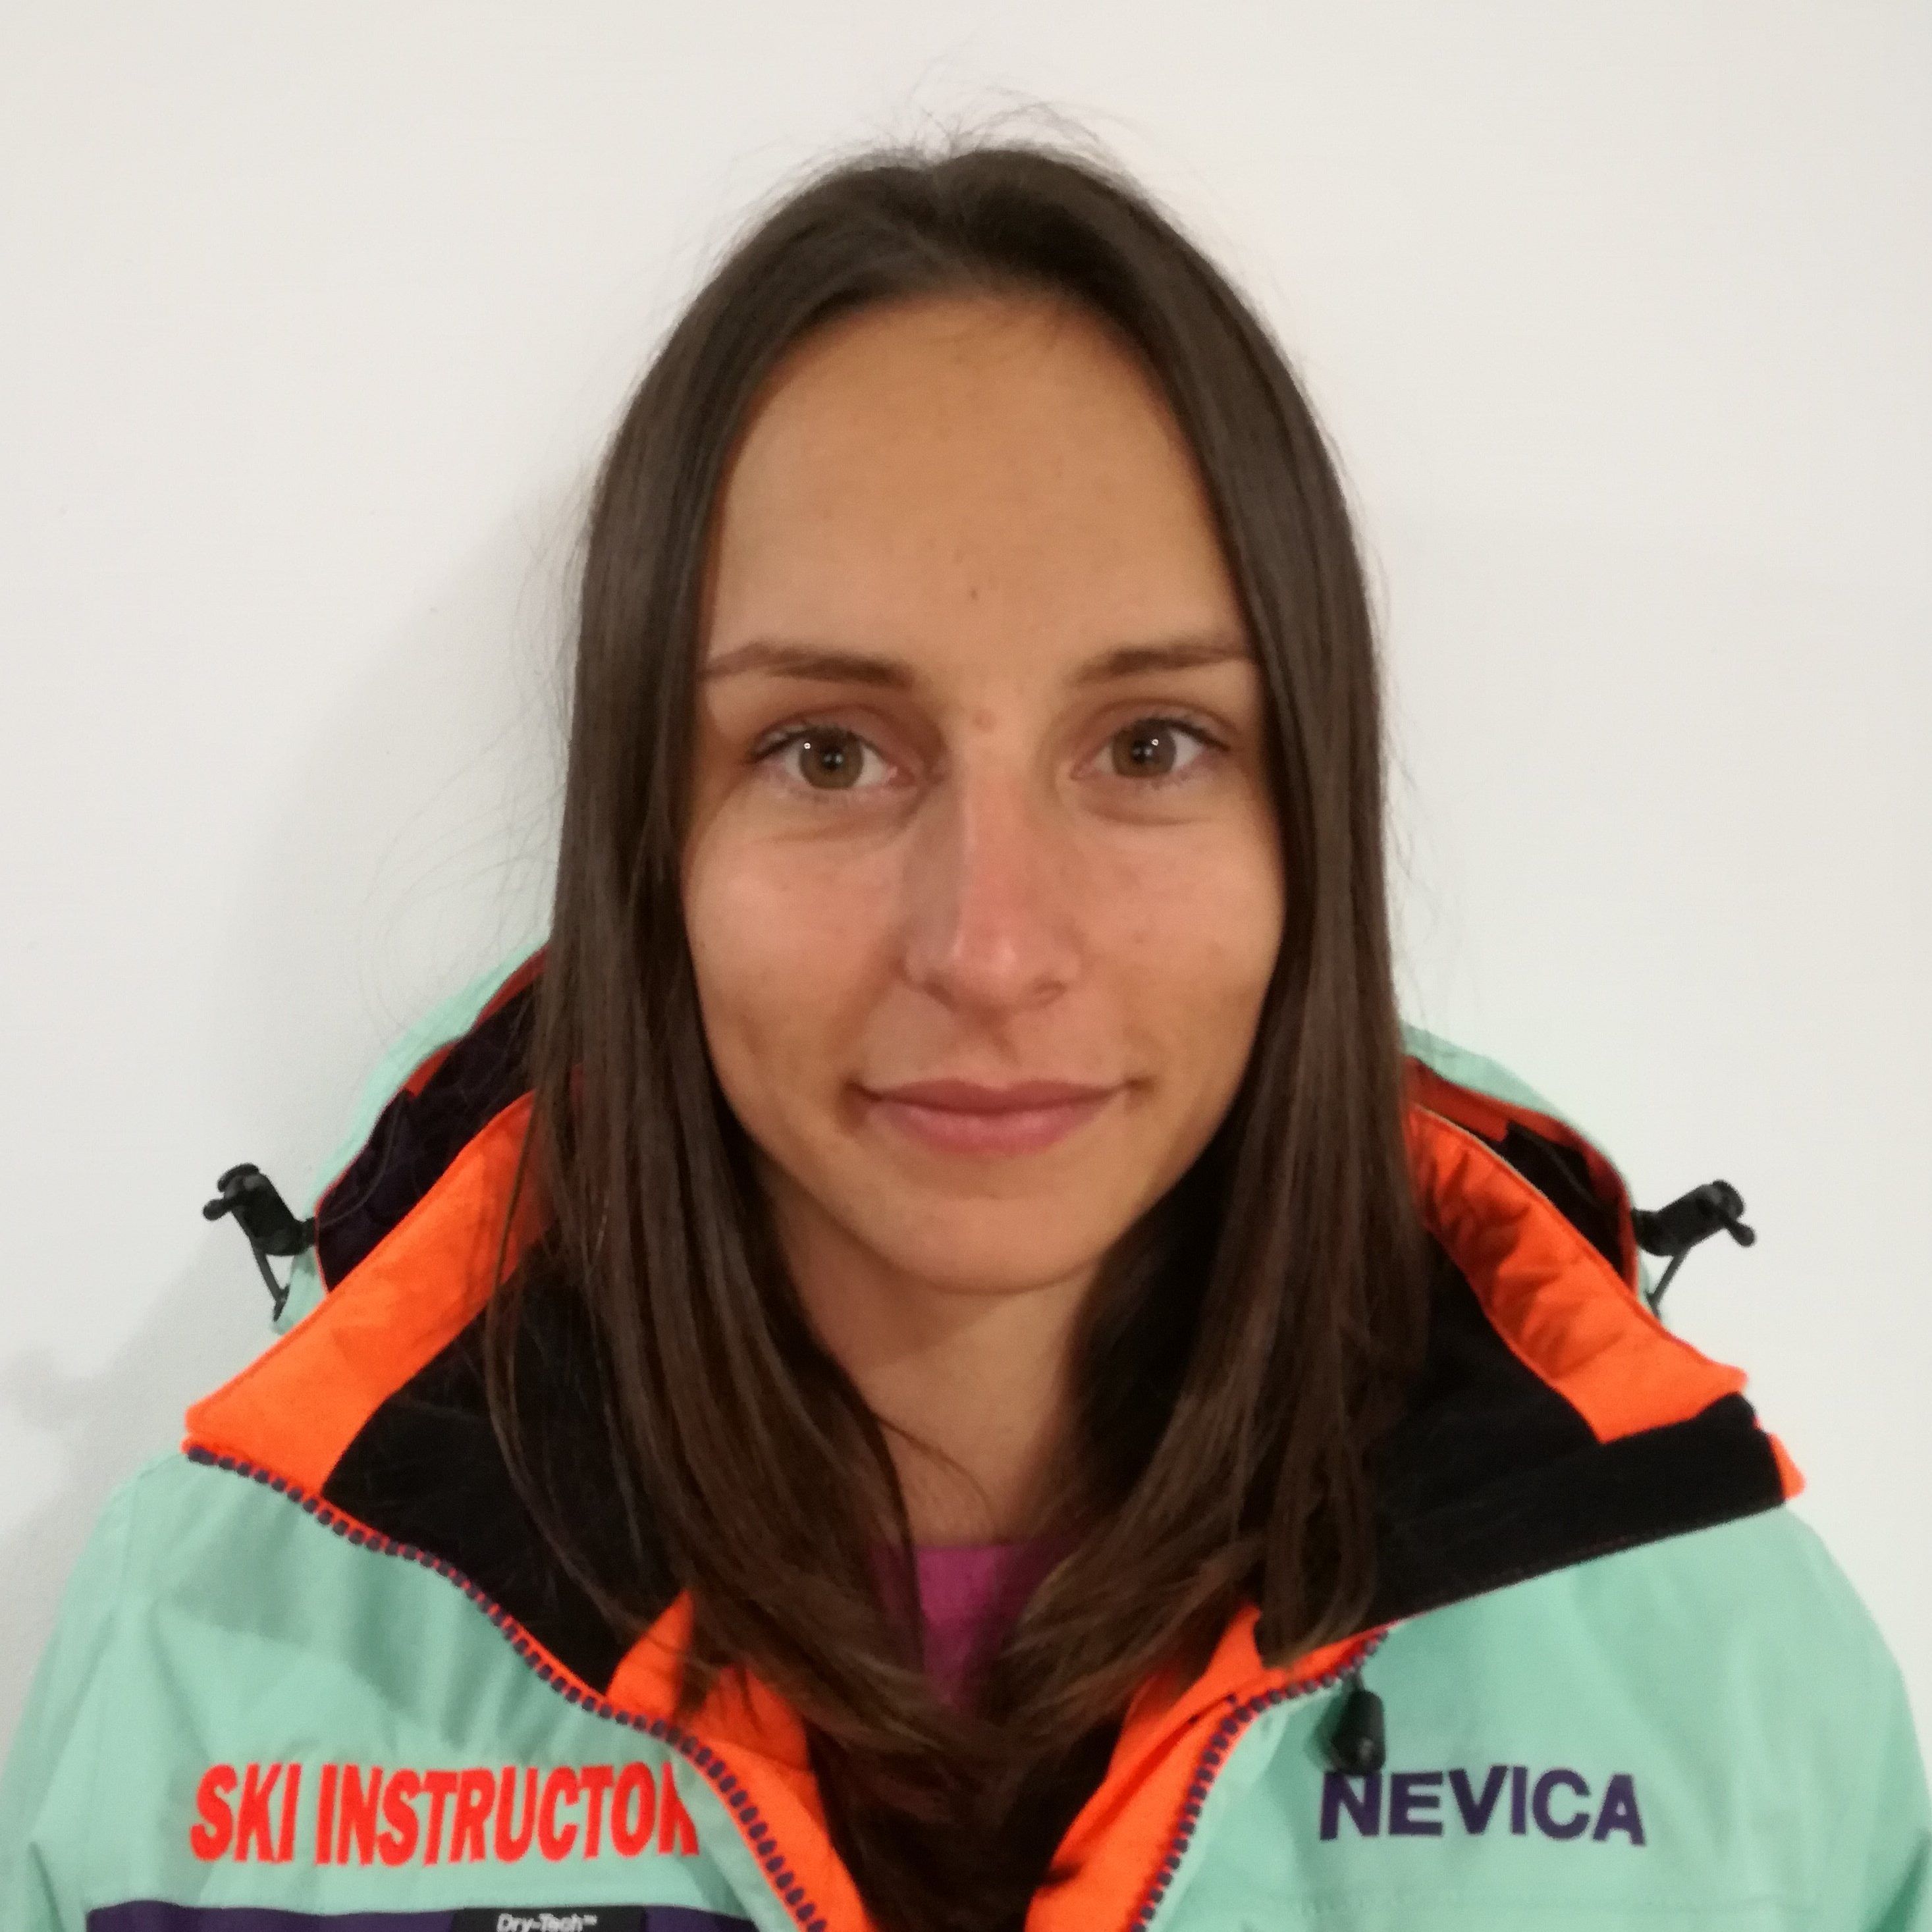 Snowboard instructor at R&J Ski Center Poiana Brasov